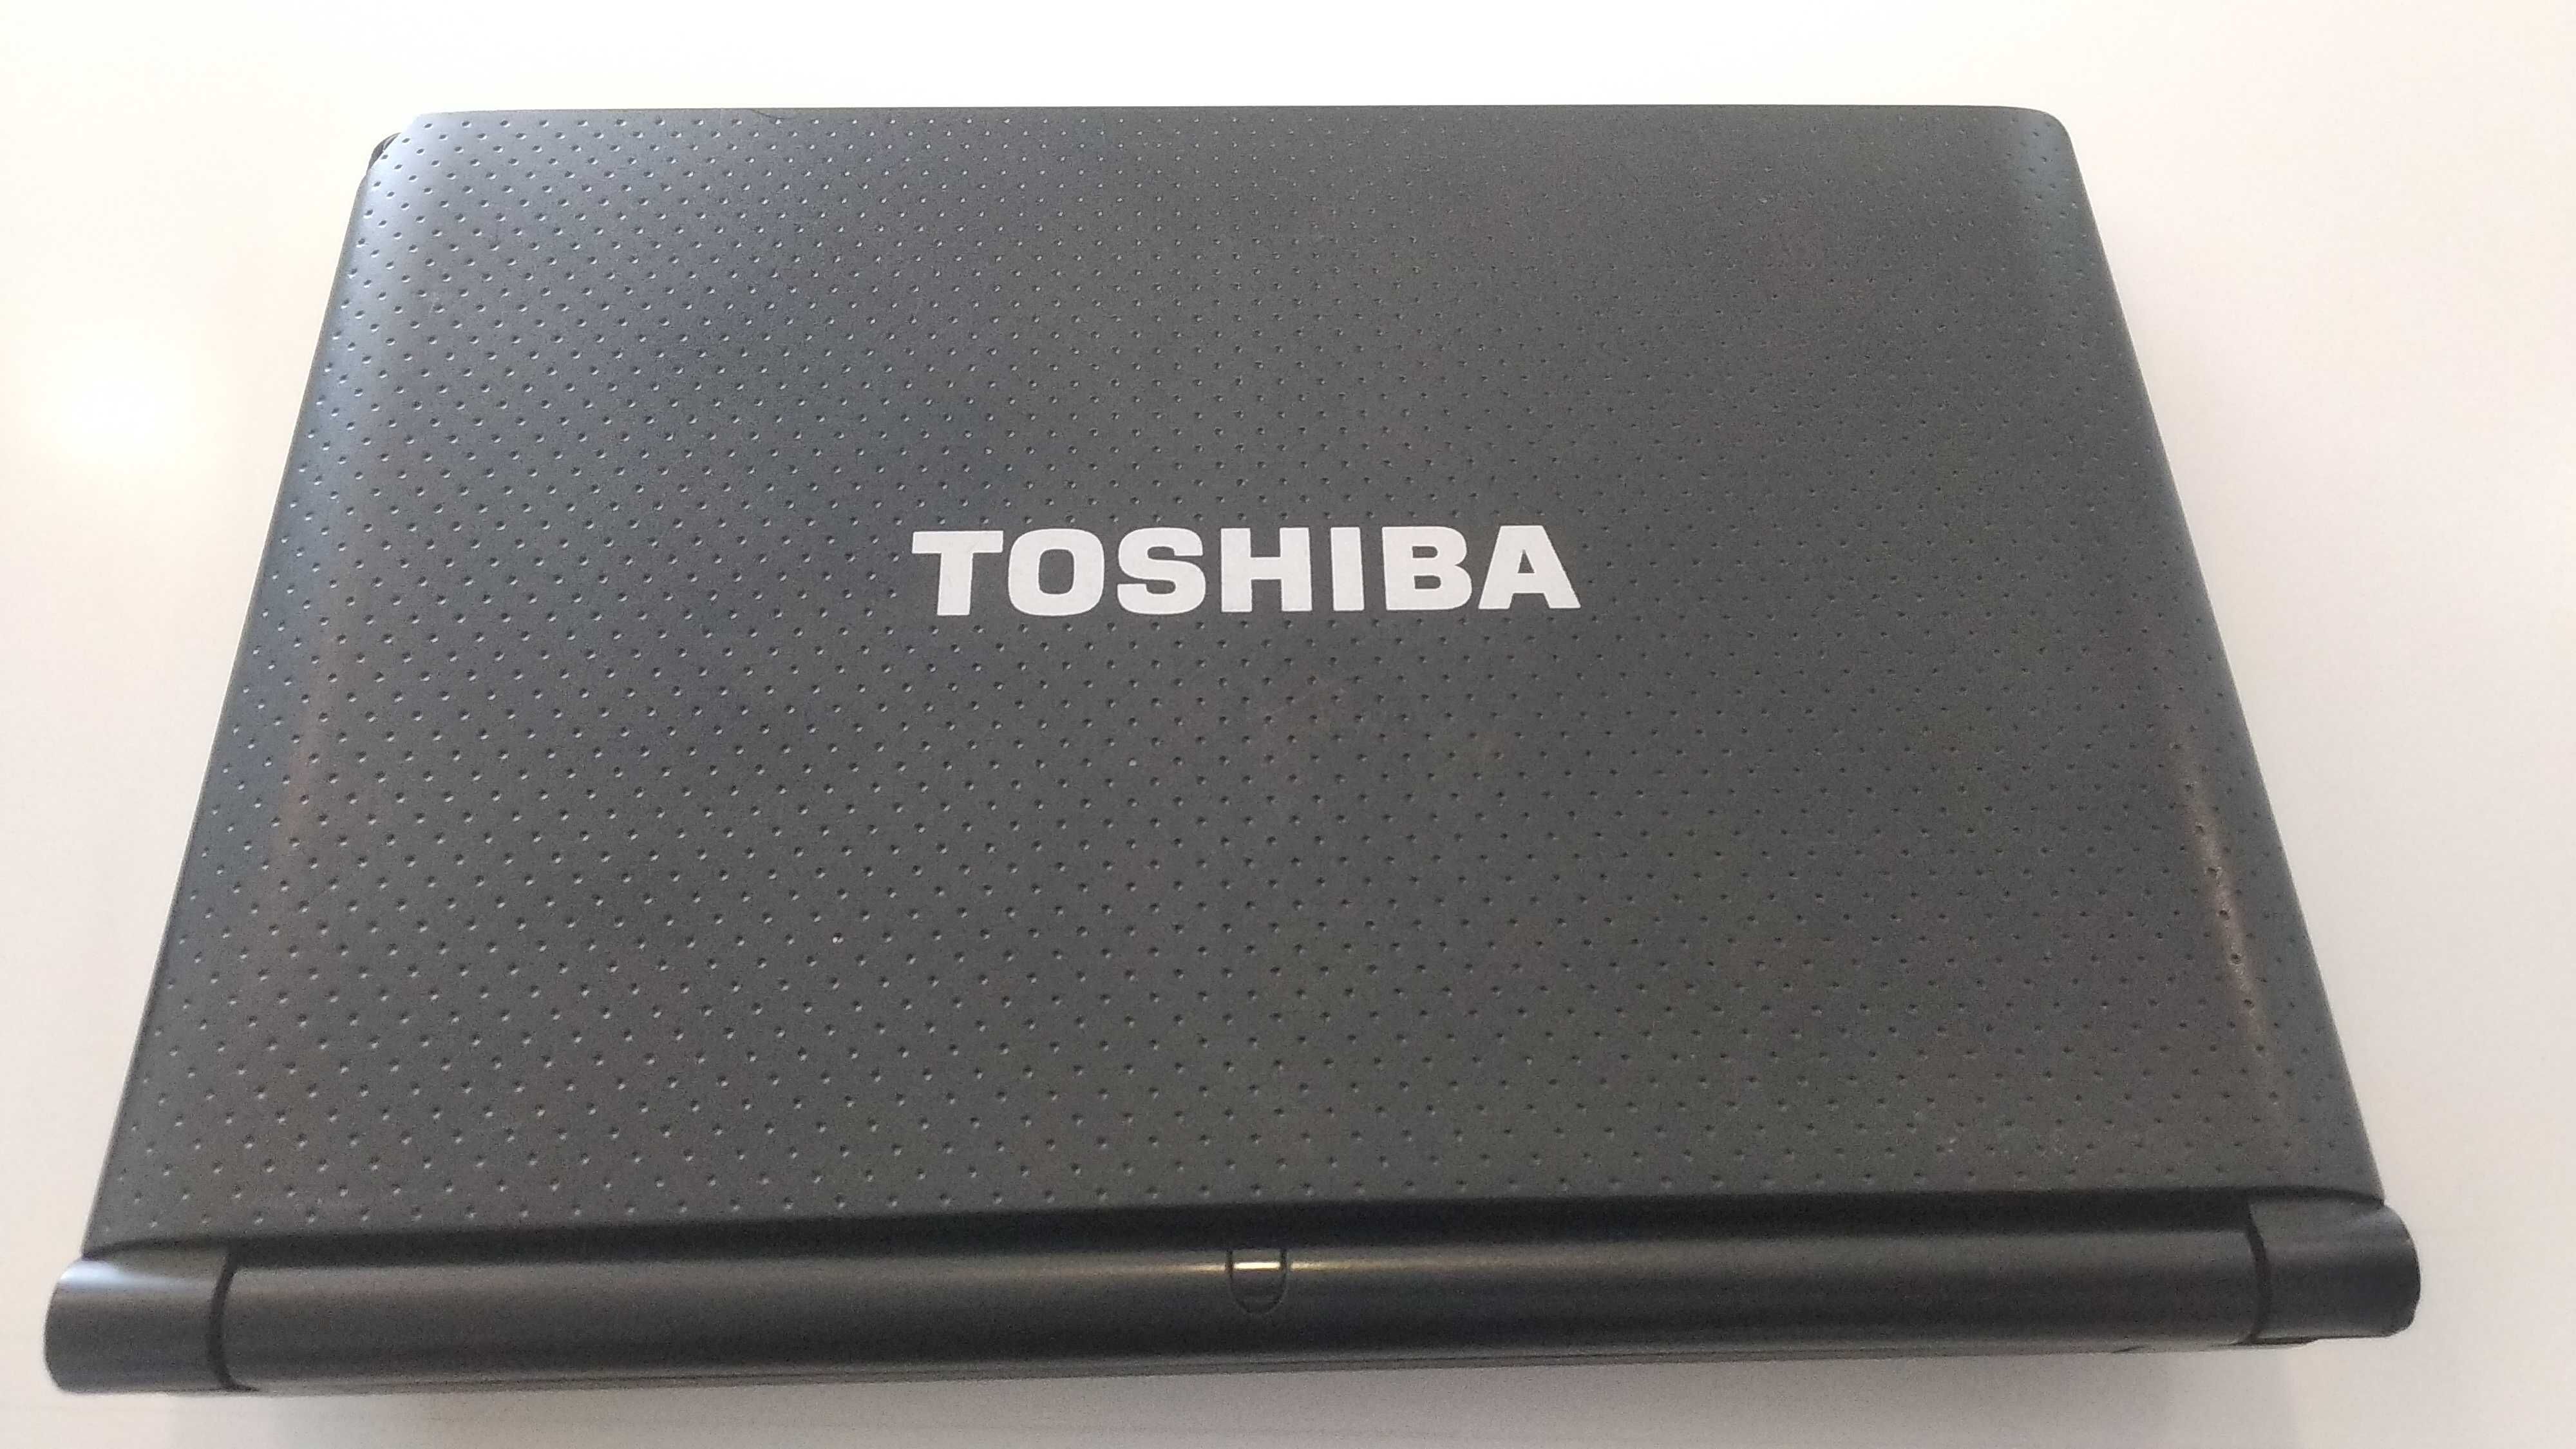 Toshiba NB500 Completa ou Peças